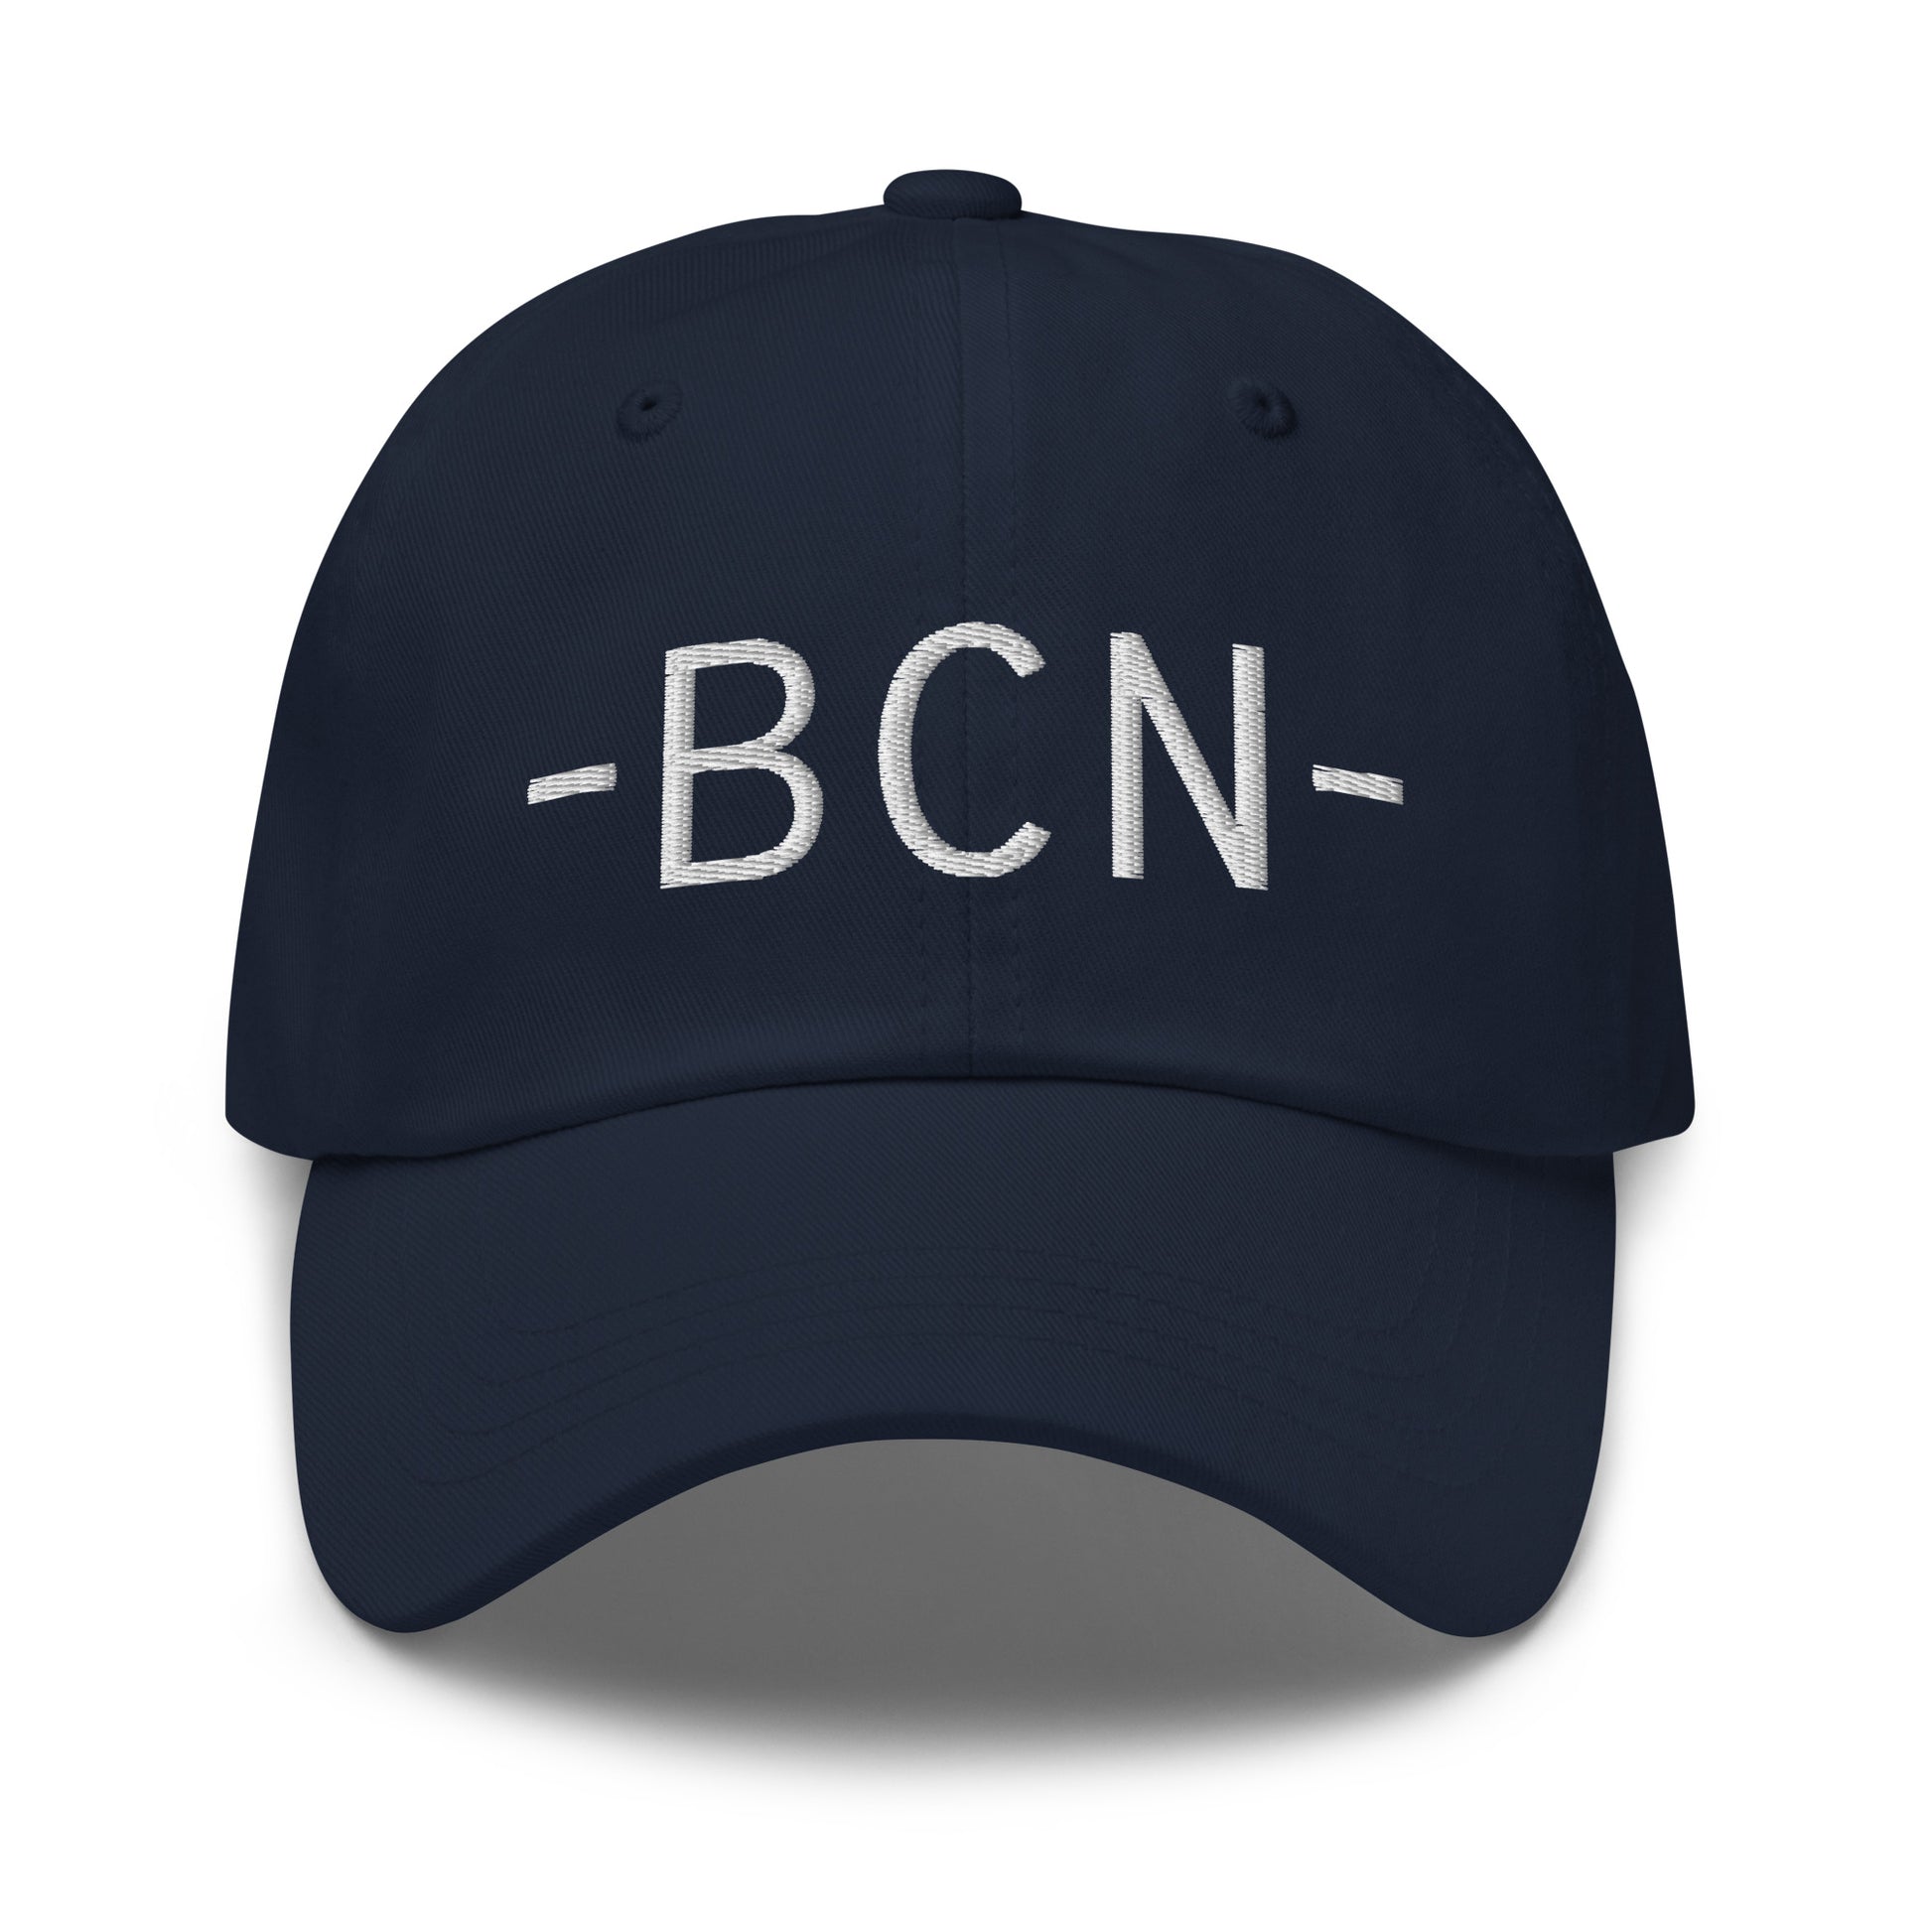 Souvenir Baseball Cap - White • BCN Barcelona • YHM Designs - Image 14